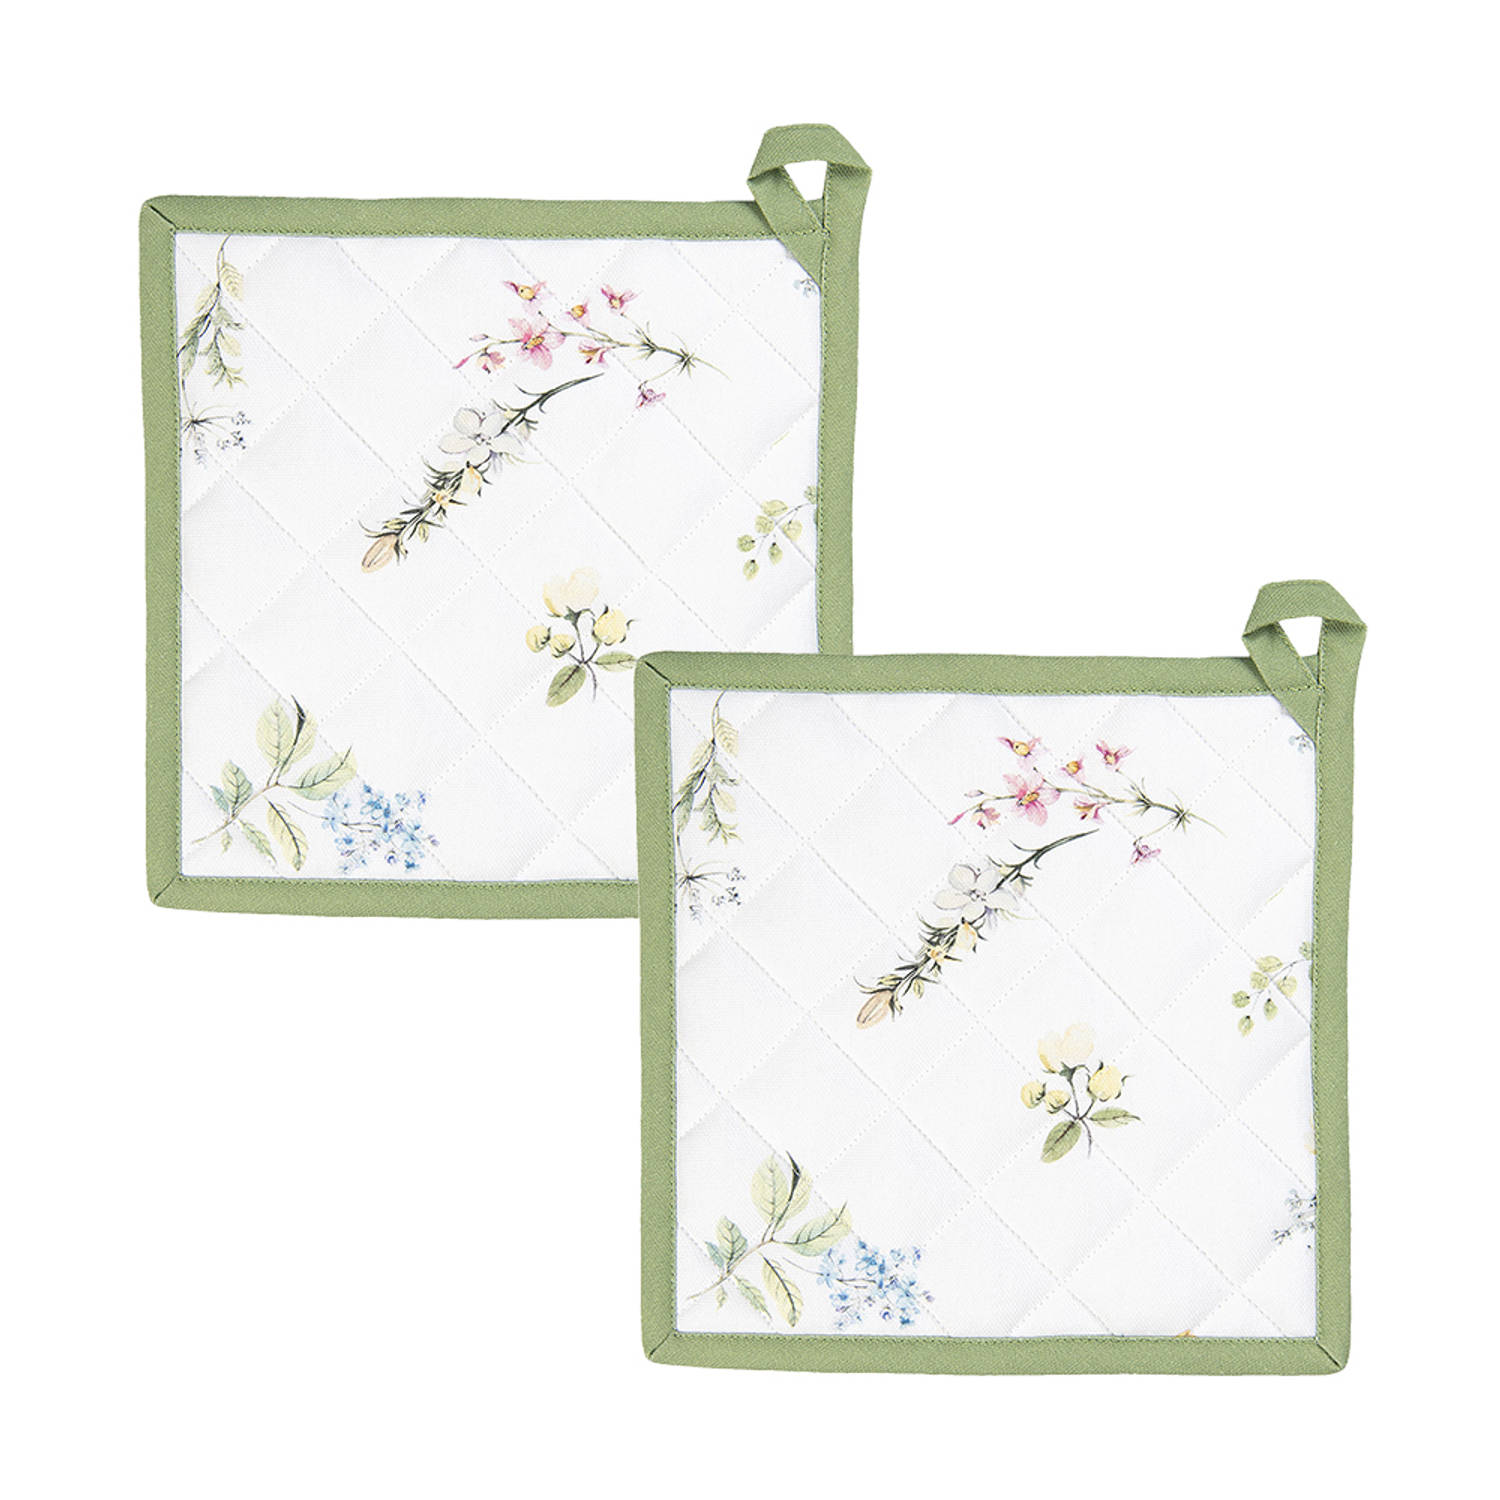 HAES DECO - Set van 2 Pannenlappen - formaat 20x20 cm - kleuren Wit / Groen - van 100% Katoen - Collectie: Happy Florals - Pannenlap